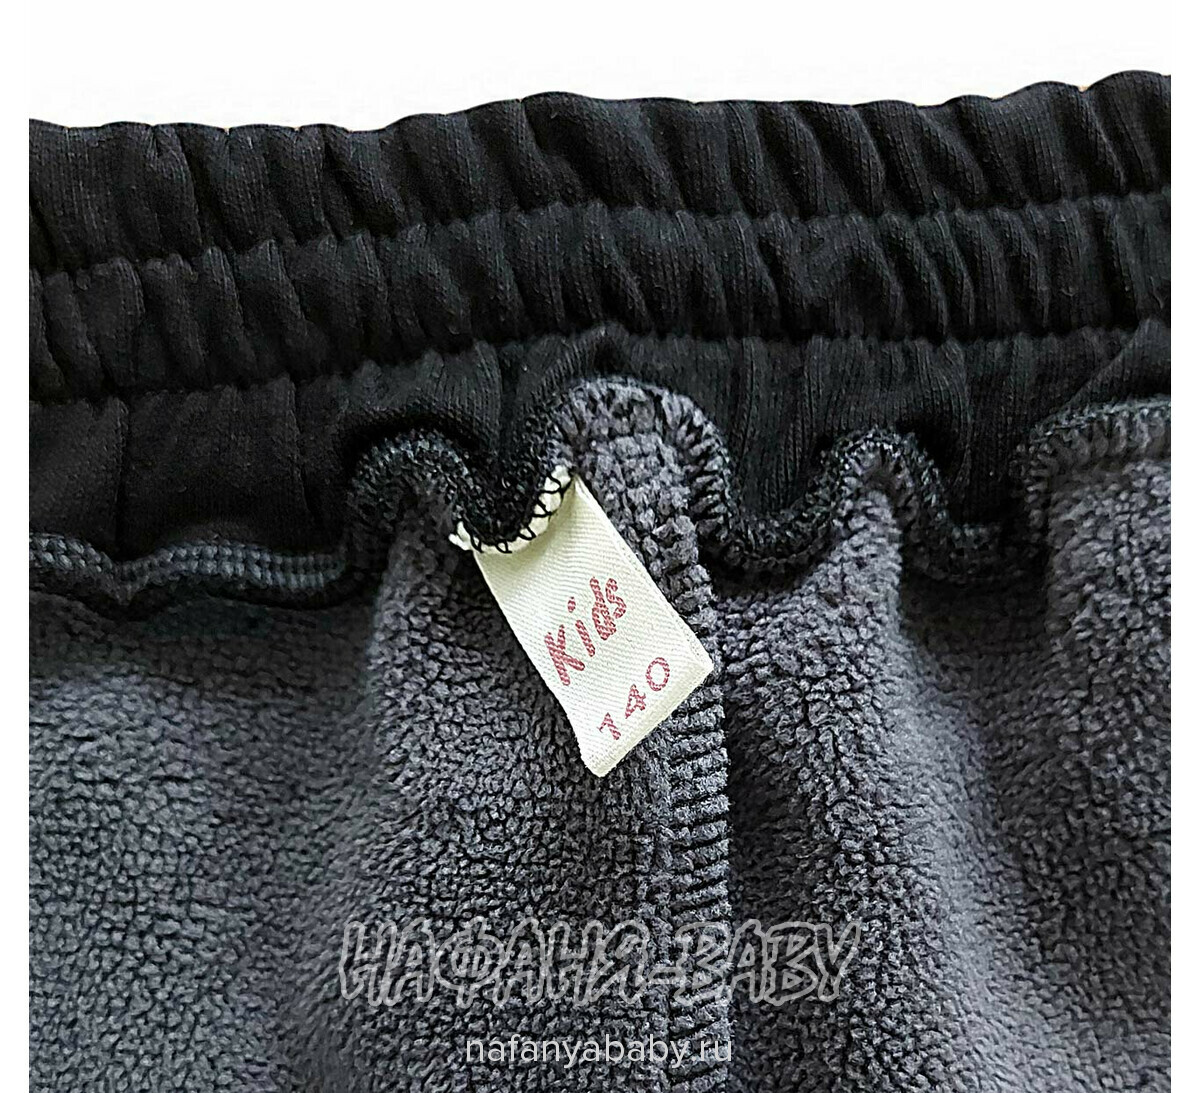 Зимние брюки на флисе XING, купить в интернет магазине Нафаня. арт: 606, цвет черный